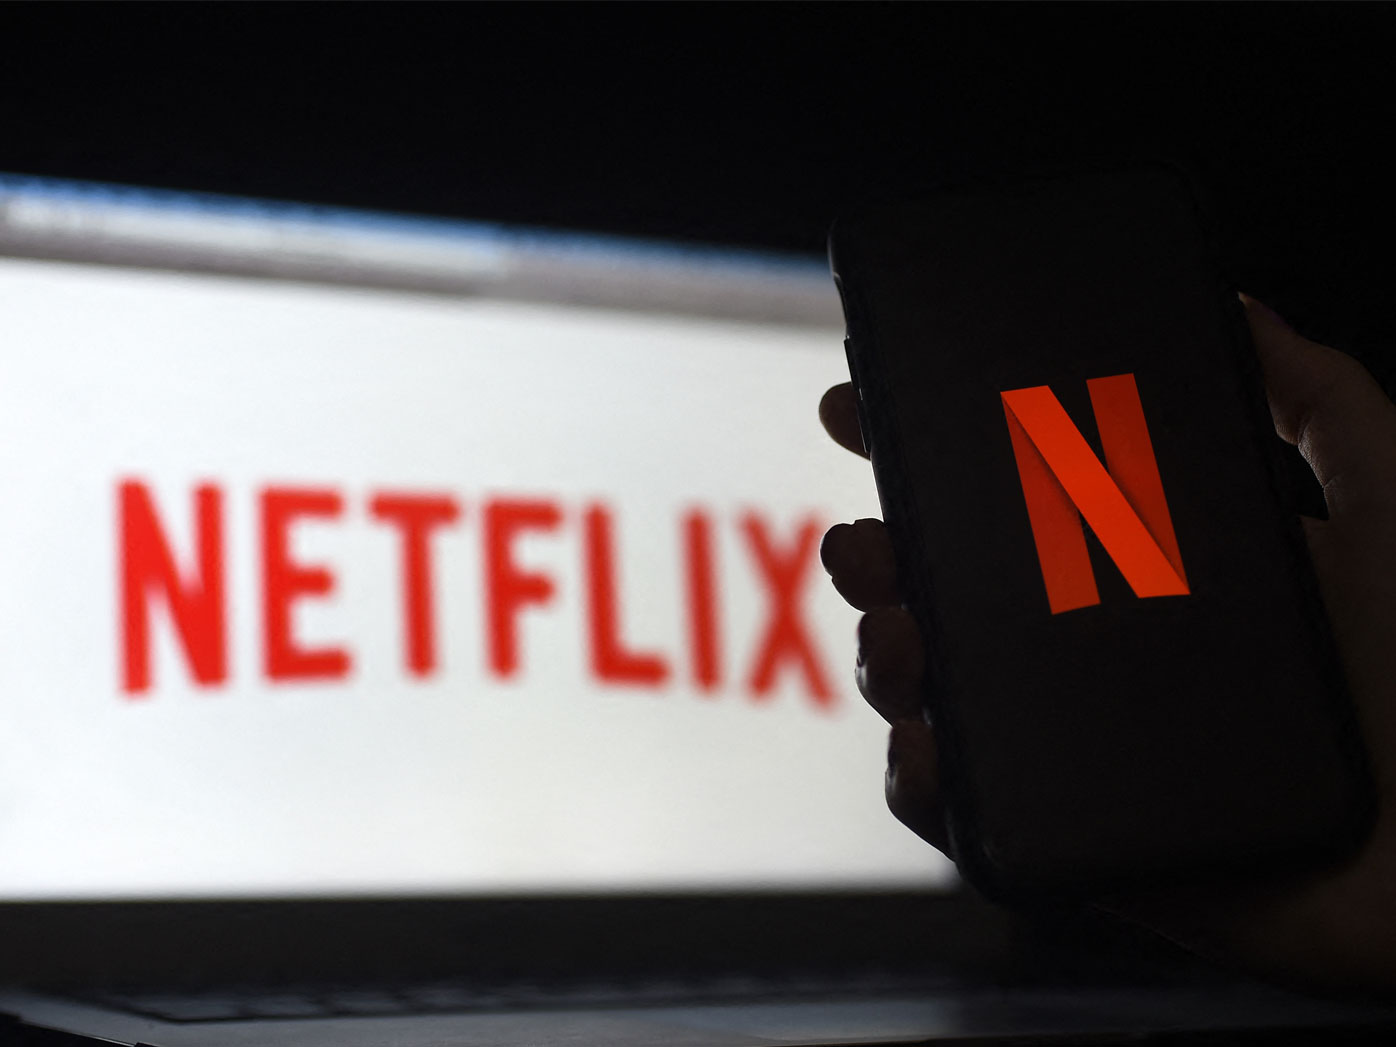 Netflix perdió casi 1 millón de suscriptores durante la primavera en medio de una competencia más dura y una inflación vertiginosa que está afectando los presupuestos de los hogares, lo que aumenta la urgencia detrás del esfuerzo del servicio de transmisión de video por lanzar una opción más económica con interrupciones comerciales.